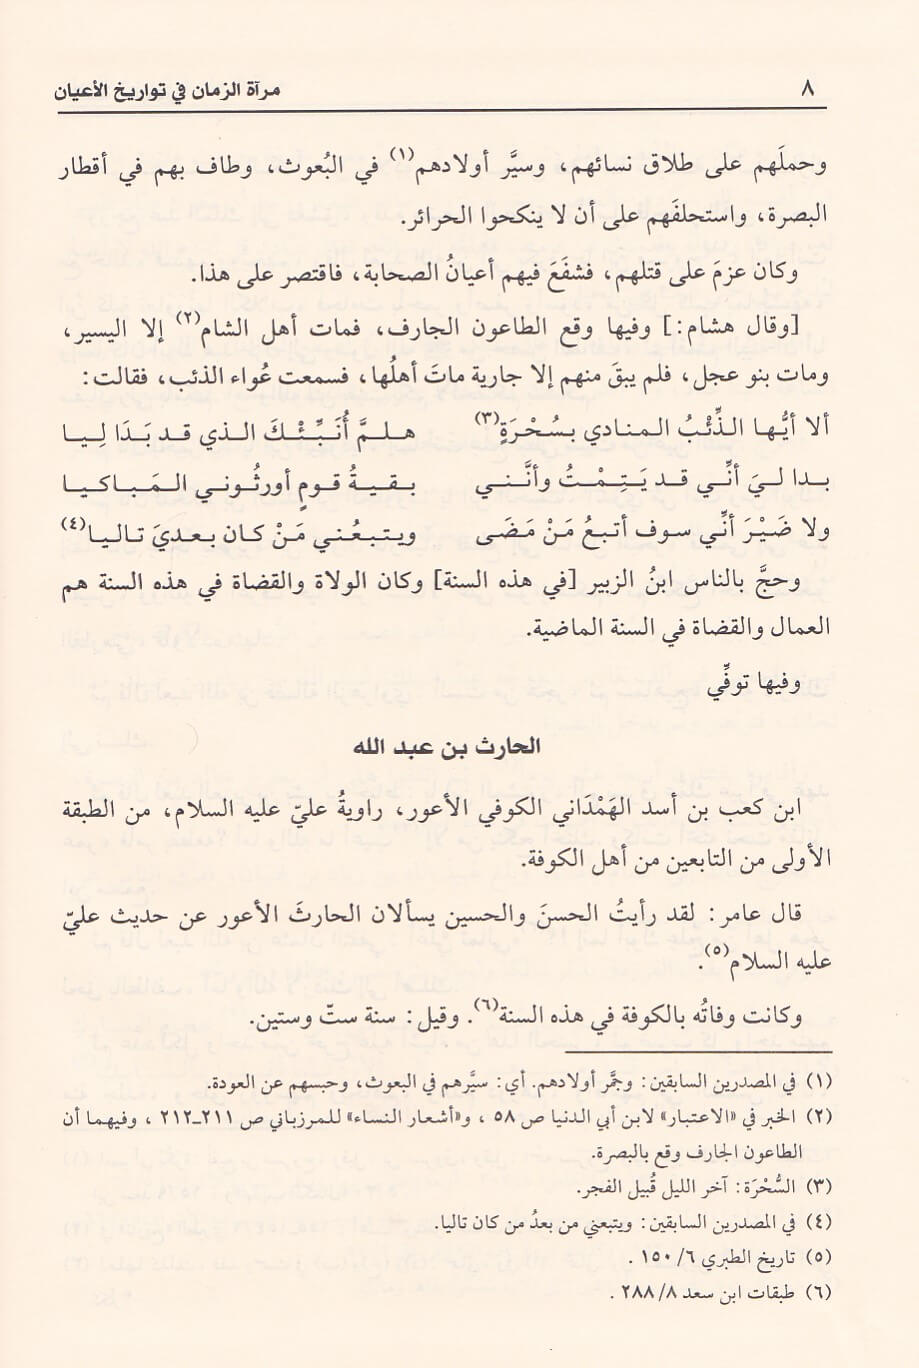 مراة الزمان في تواريخ الاعيان    Miratus Zaman Fi Tawarikh Al Ayaan (23 Volume Set)